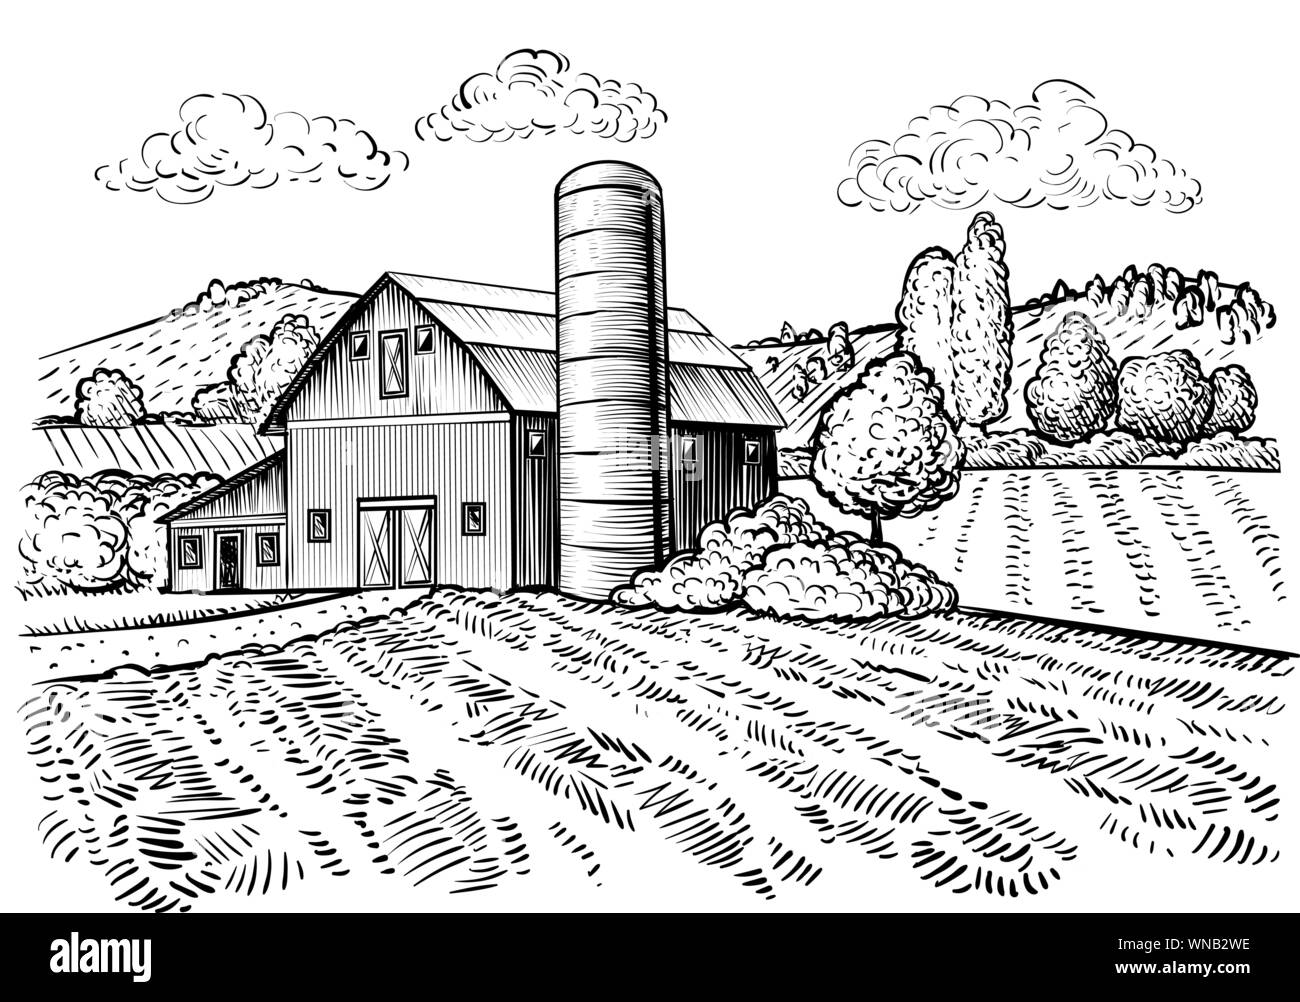 Ländliche Landschaft, Farm Barn und Windmühle Skizze. Hand zeichnen Abbildung: natürliche malerische Landschaft. Landwirtschaftlichen Hof und Feld. Vektor monochrom Übersicht Bild Stock Vektor